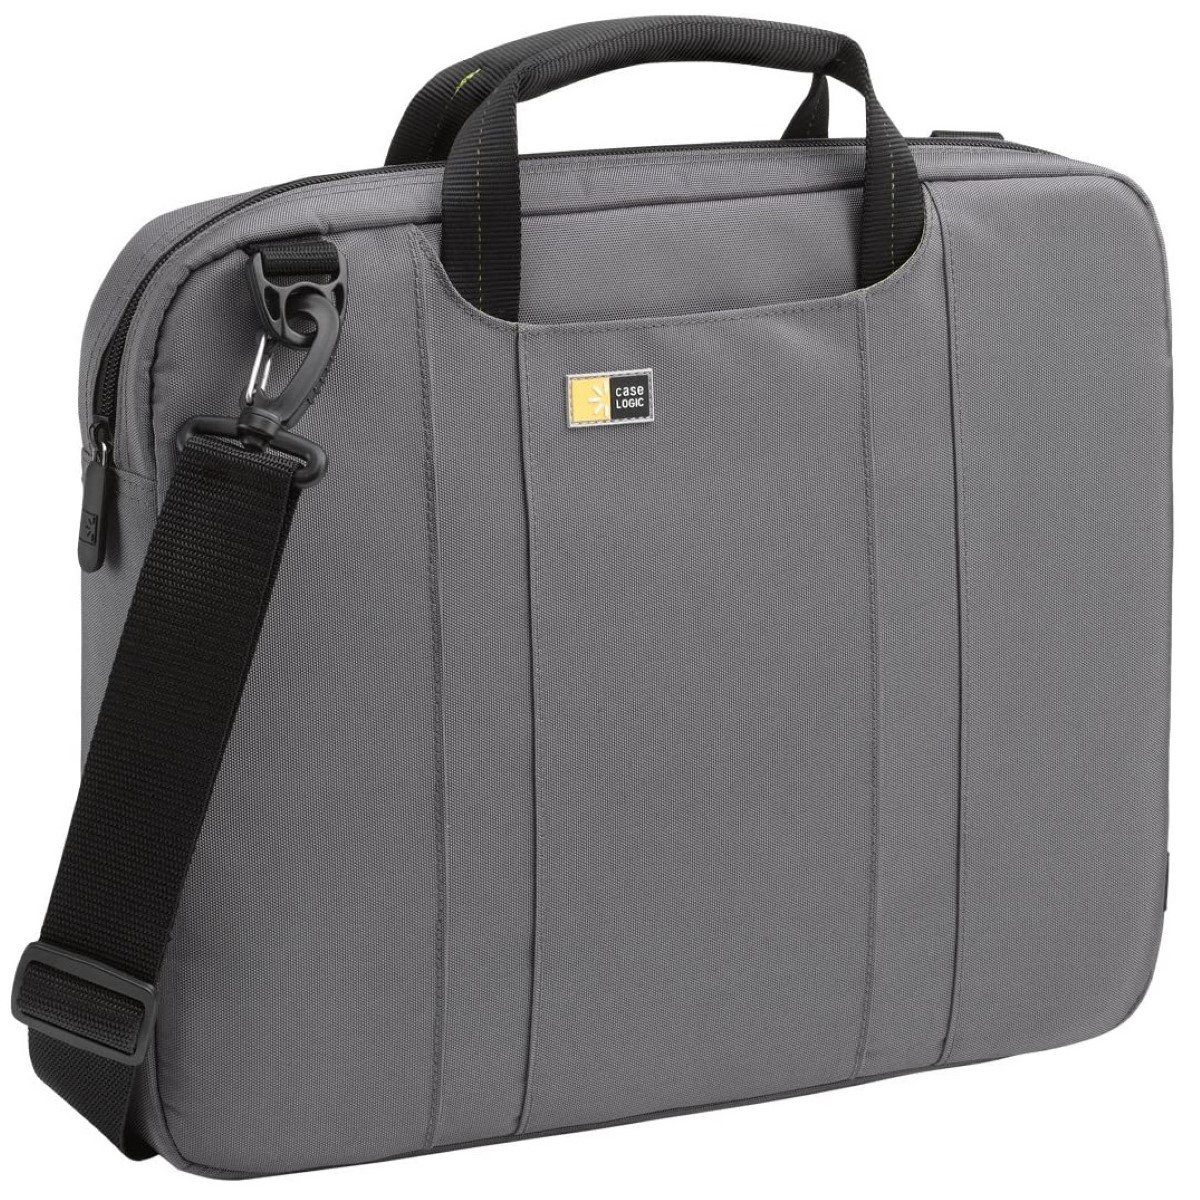 Case Logic Laptoptasche Notebook-Tasche Nylon Grau 12" bis 14", Gepolsterte  Business Hülle, Vordertaschen, gepolsterter Schultergurt, passend für 12,4"  12,6" 13" 13,3" 13,5" 14" 14,1" 14,2" Zoll Laptop